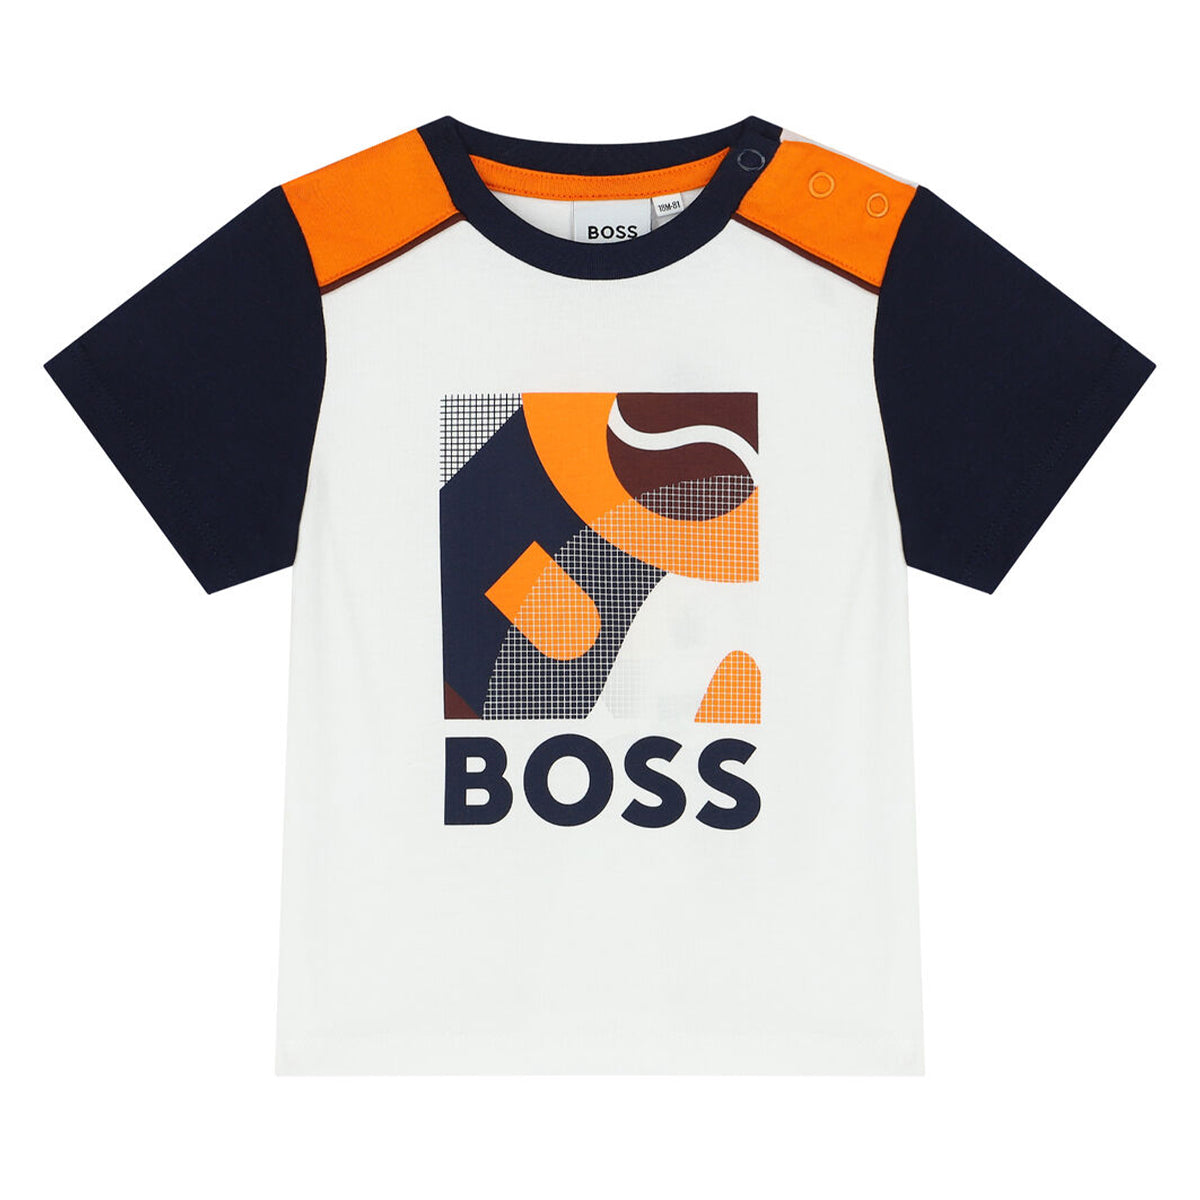 חולצת טי שרט BOSS הדפס לוגו לתינוקות